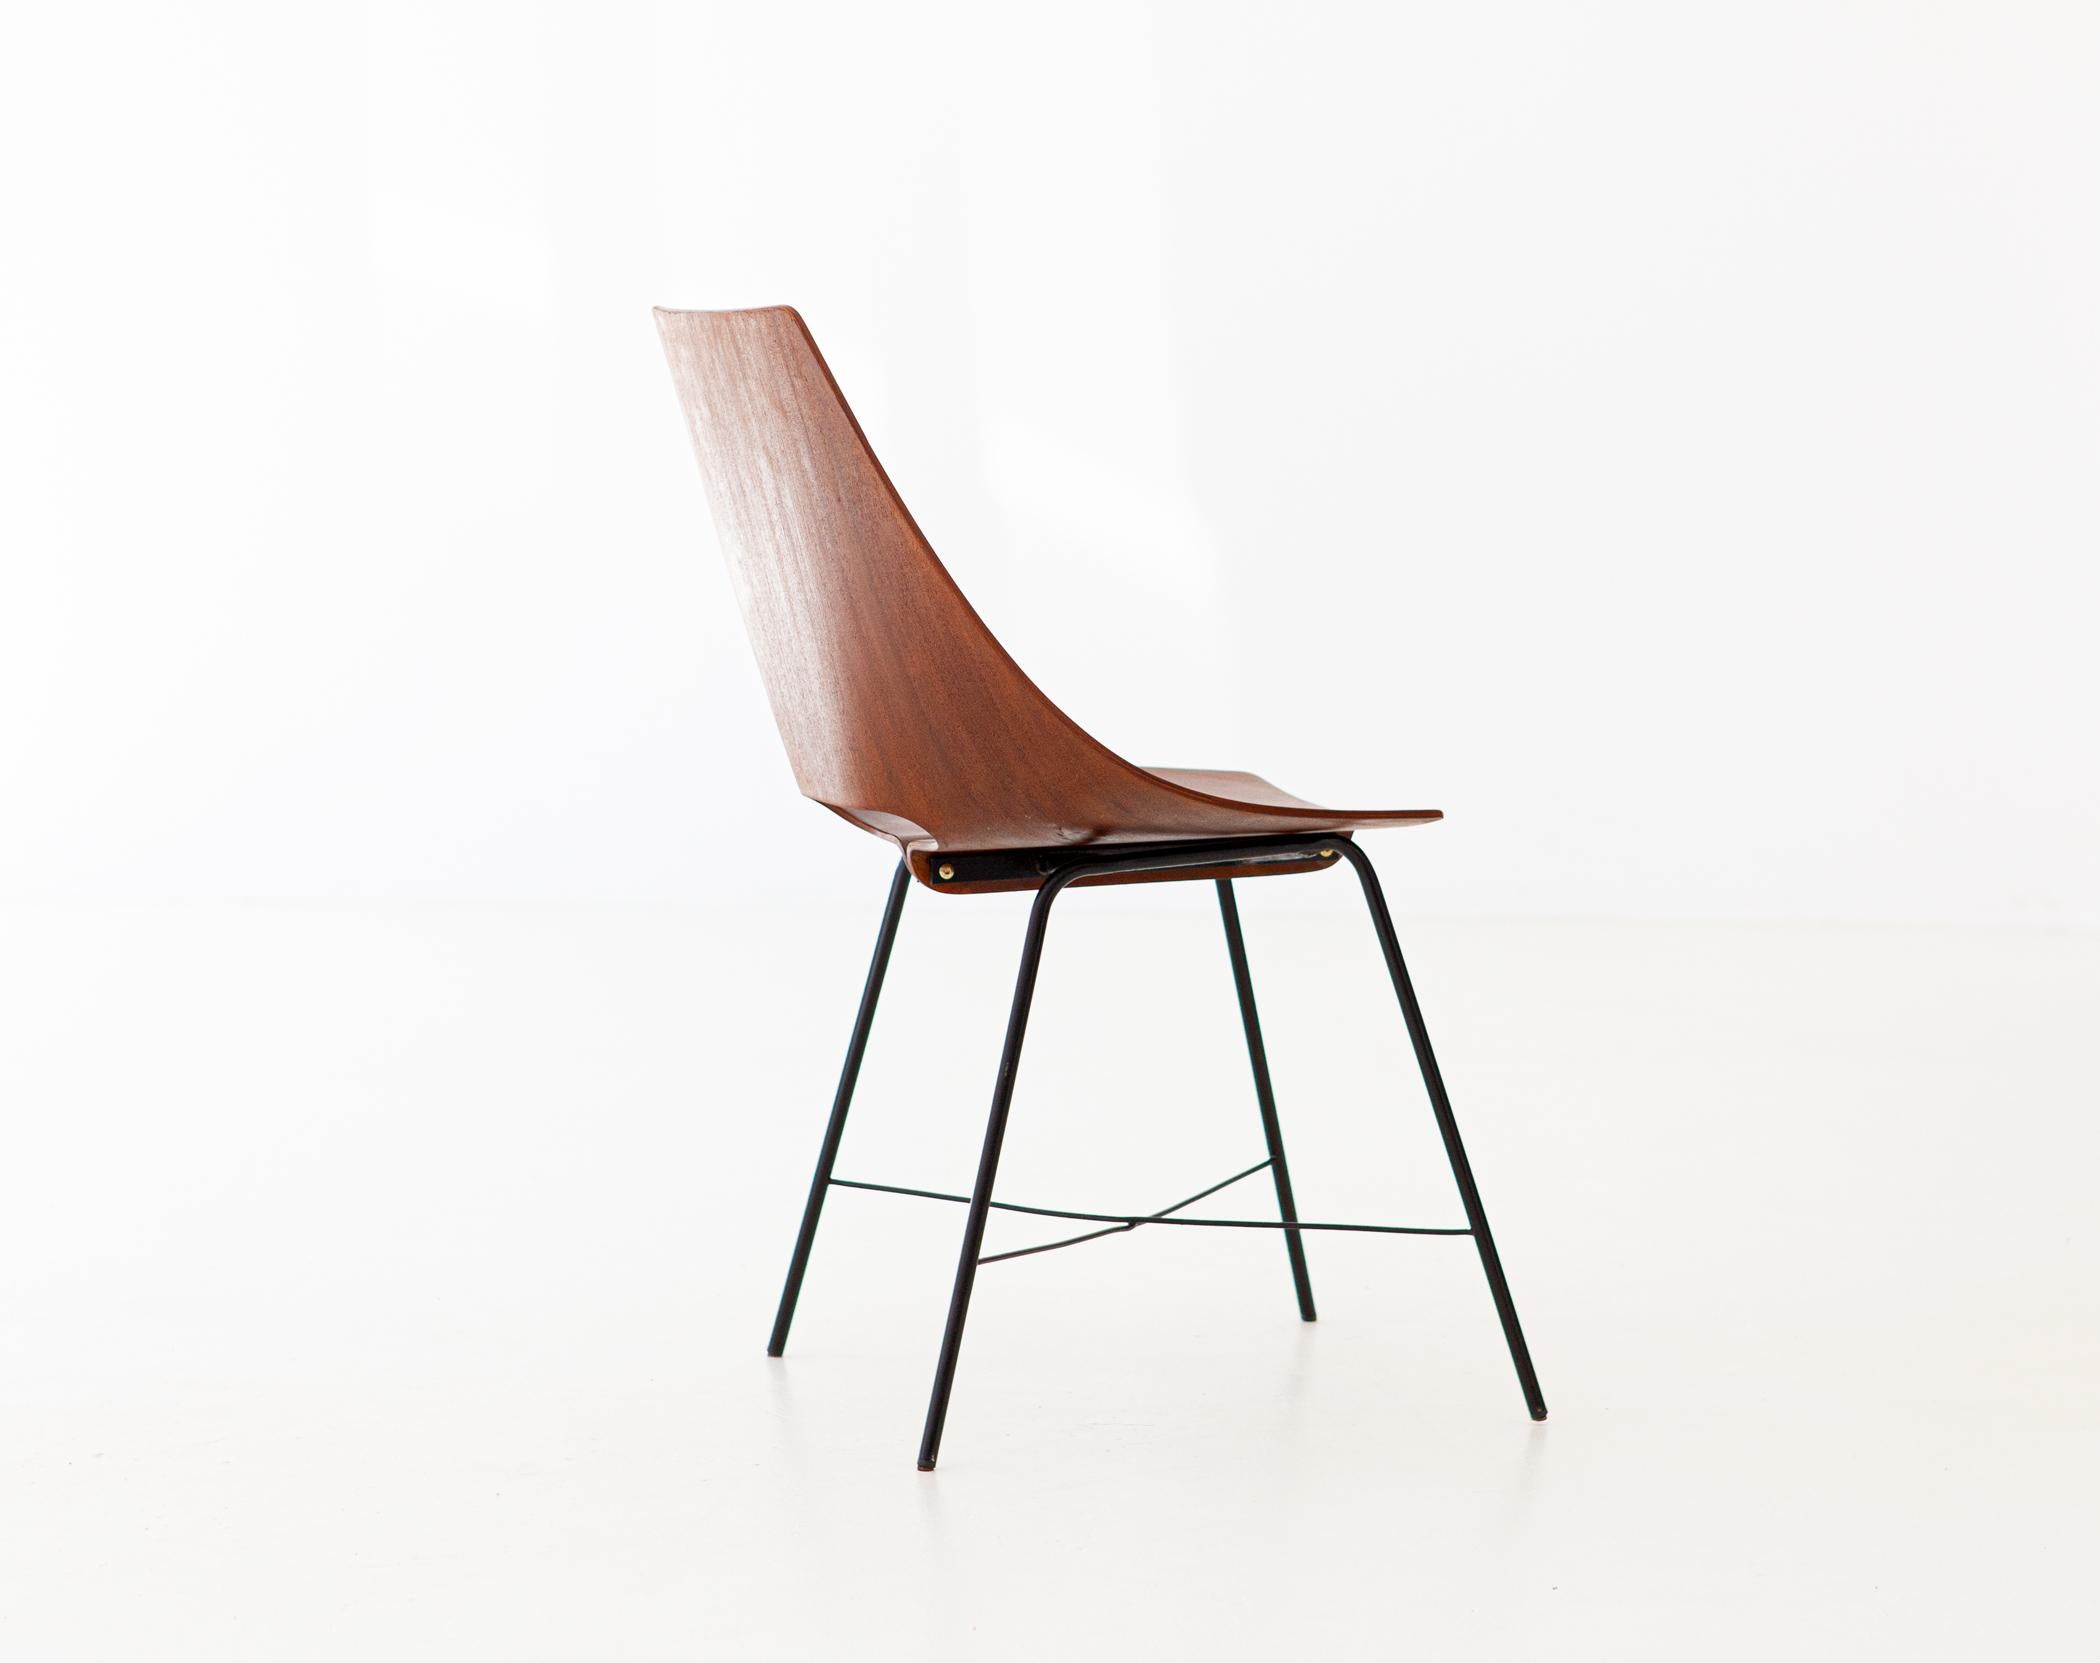 Mid-20th Century Italian Plywood Chair by Società Compensati Curvati, 1950s